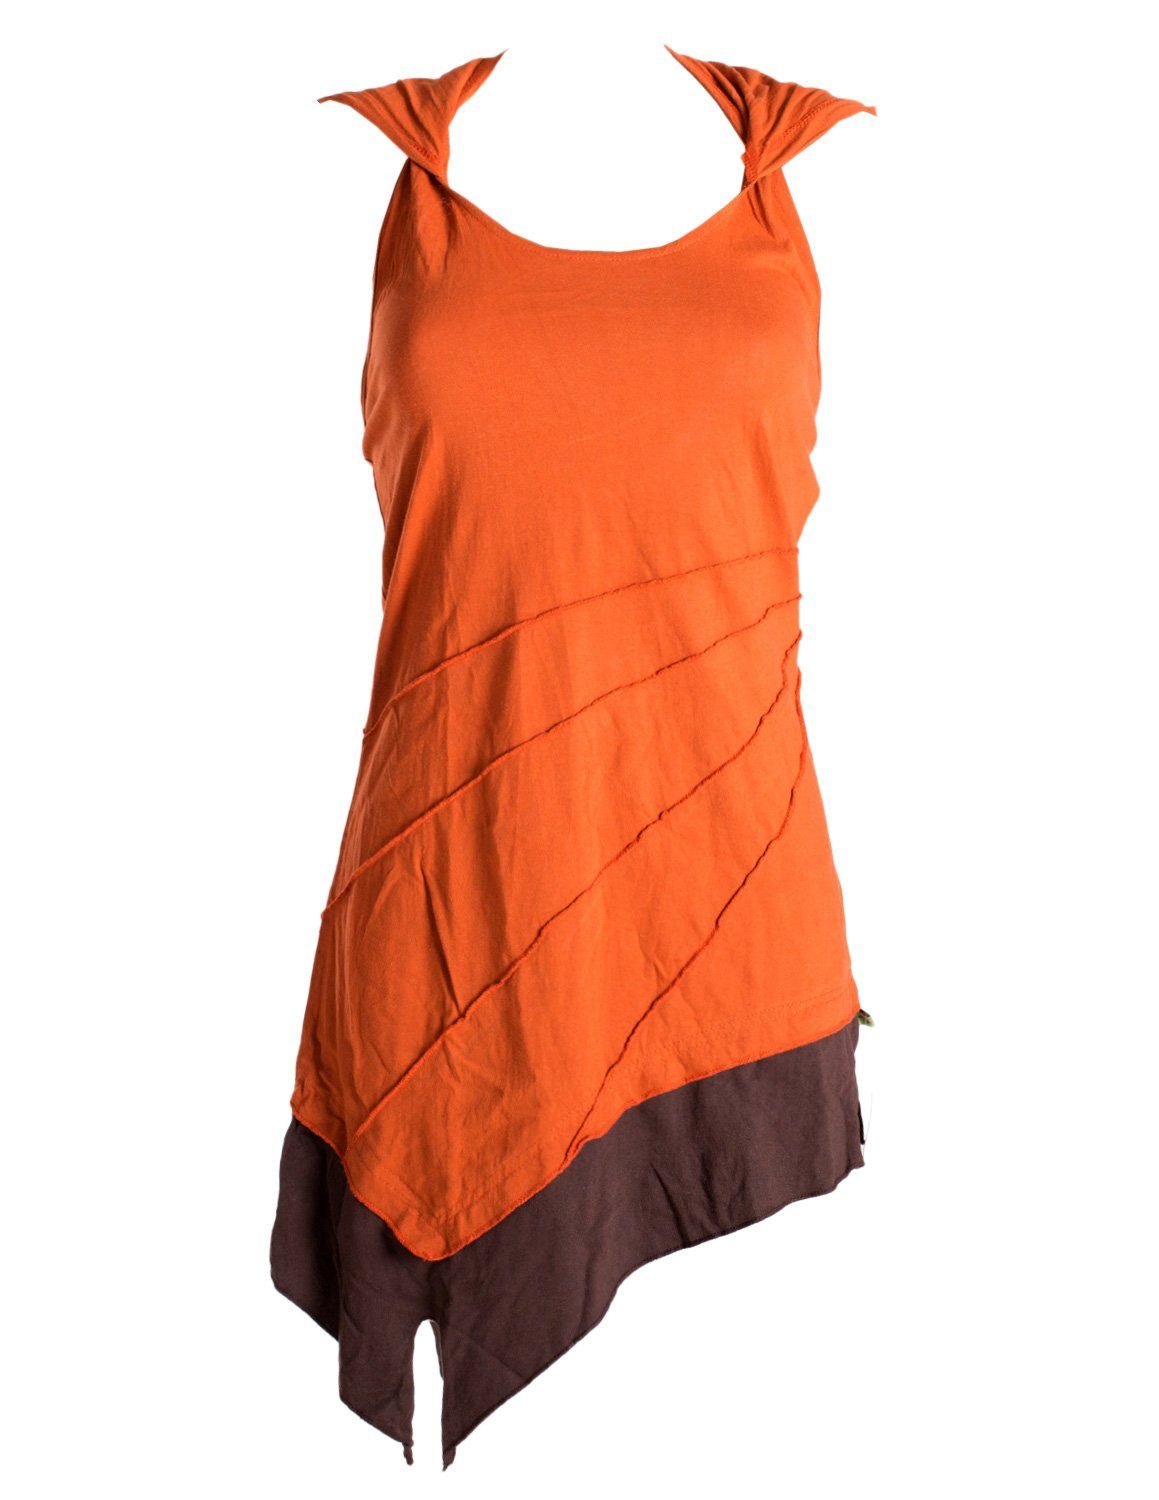 Vishes Neckholderkleid Mini Kleid Neckholder zweifarbig Zipfelkleid Hippie, Goa, Boho Elfen Style orange-braun